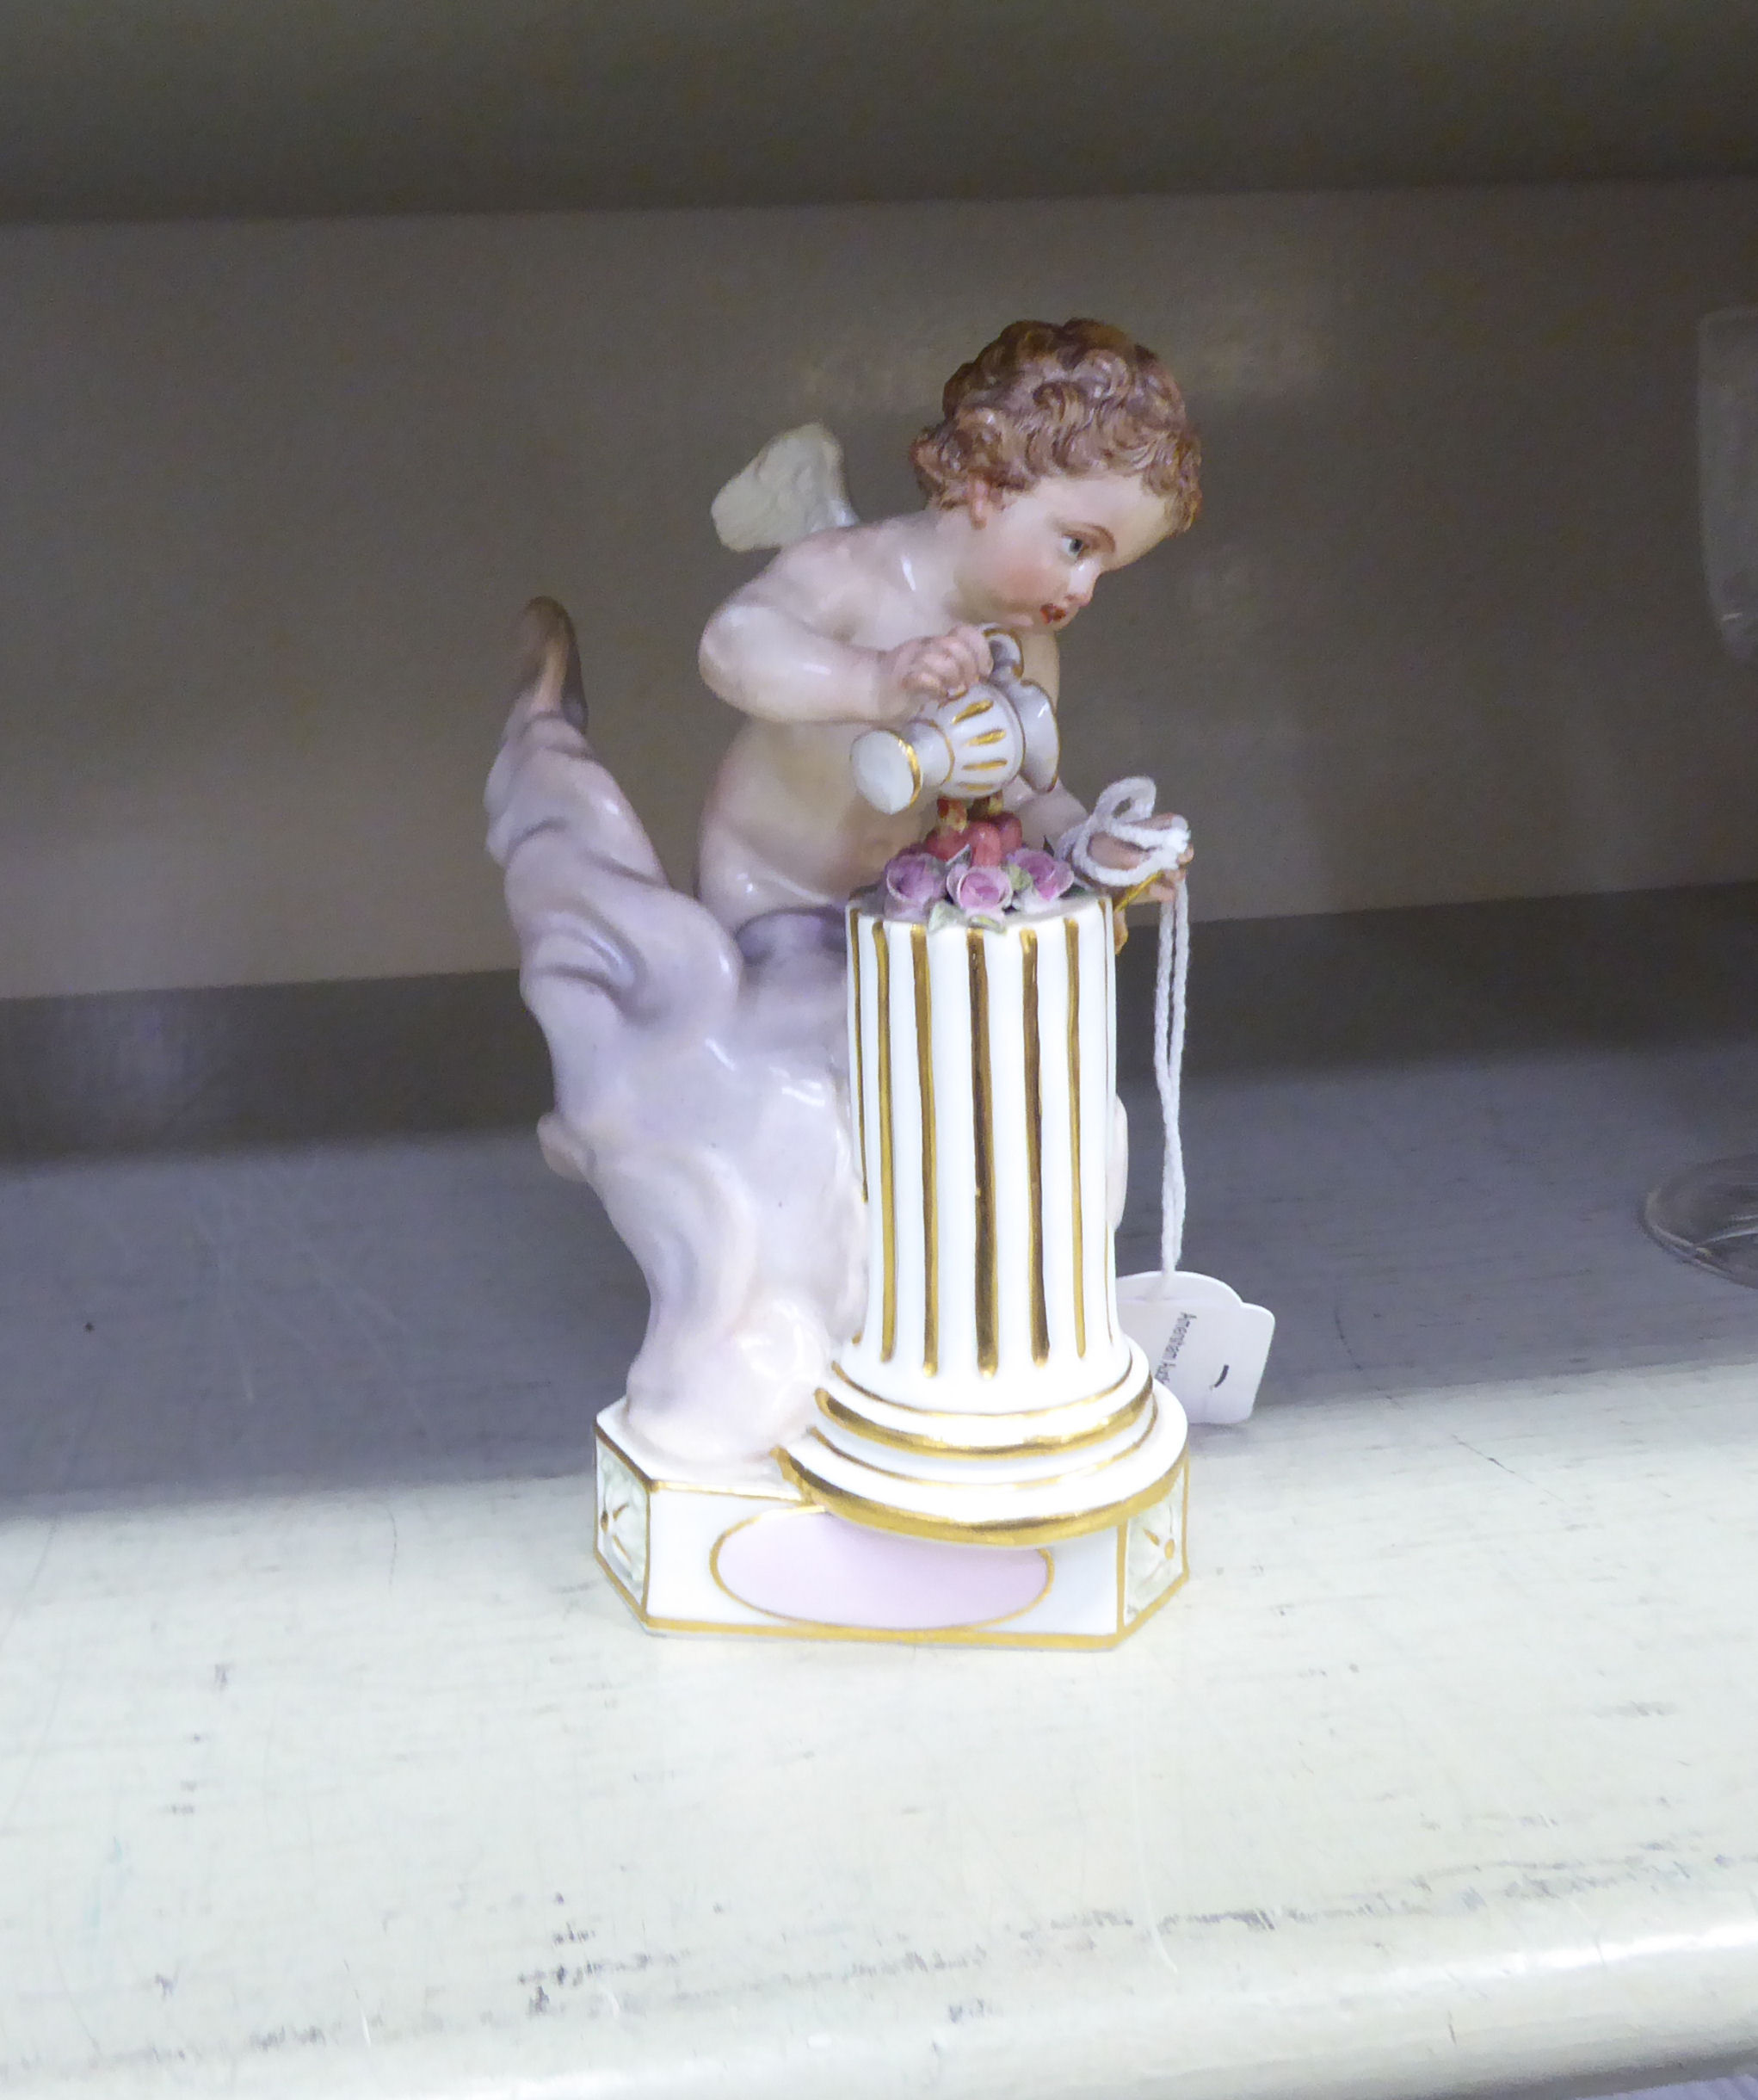 A Meissen porcelain porcelain figure 'Le Gosse st Sauvage'  model no. 131 F14  5"h